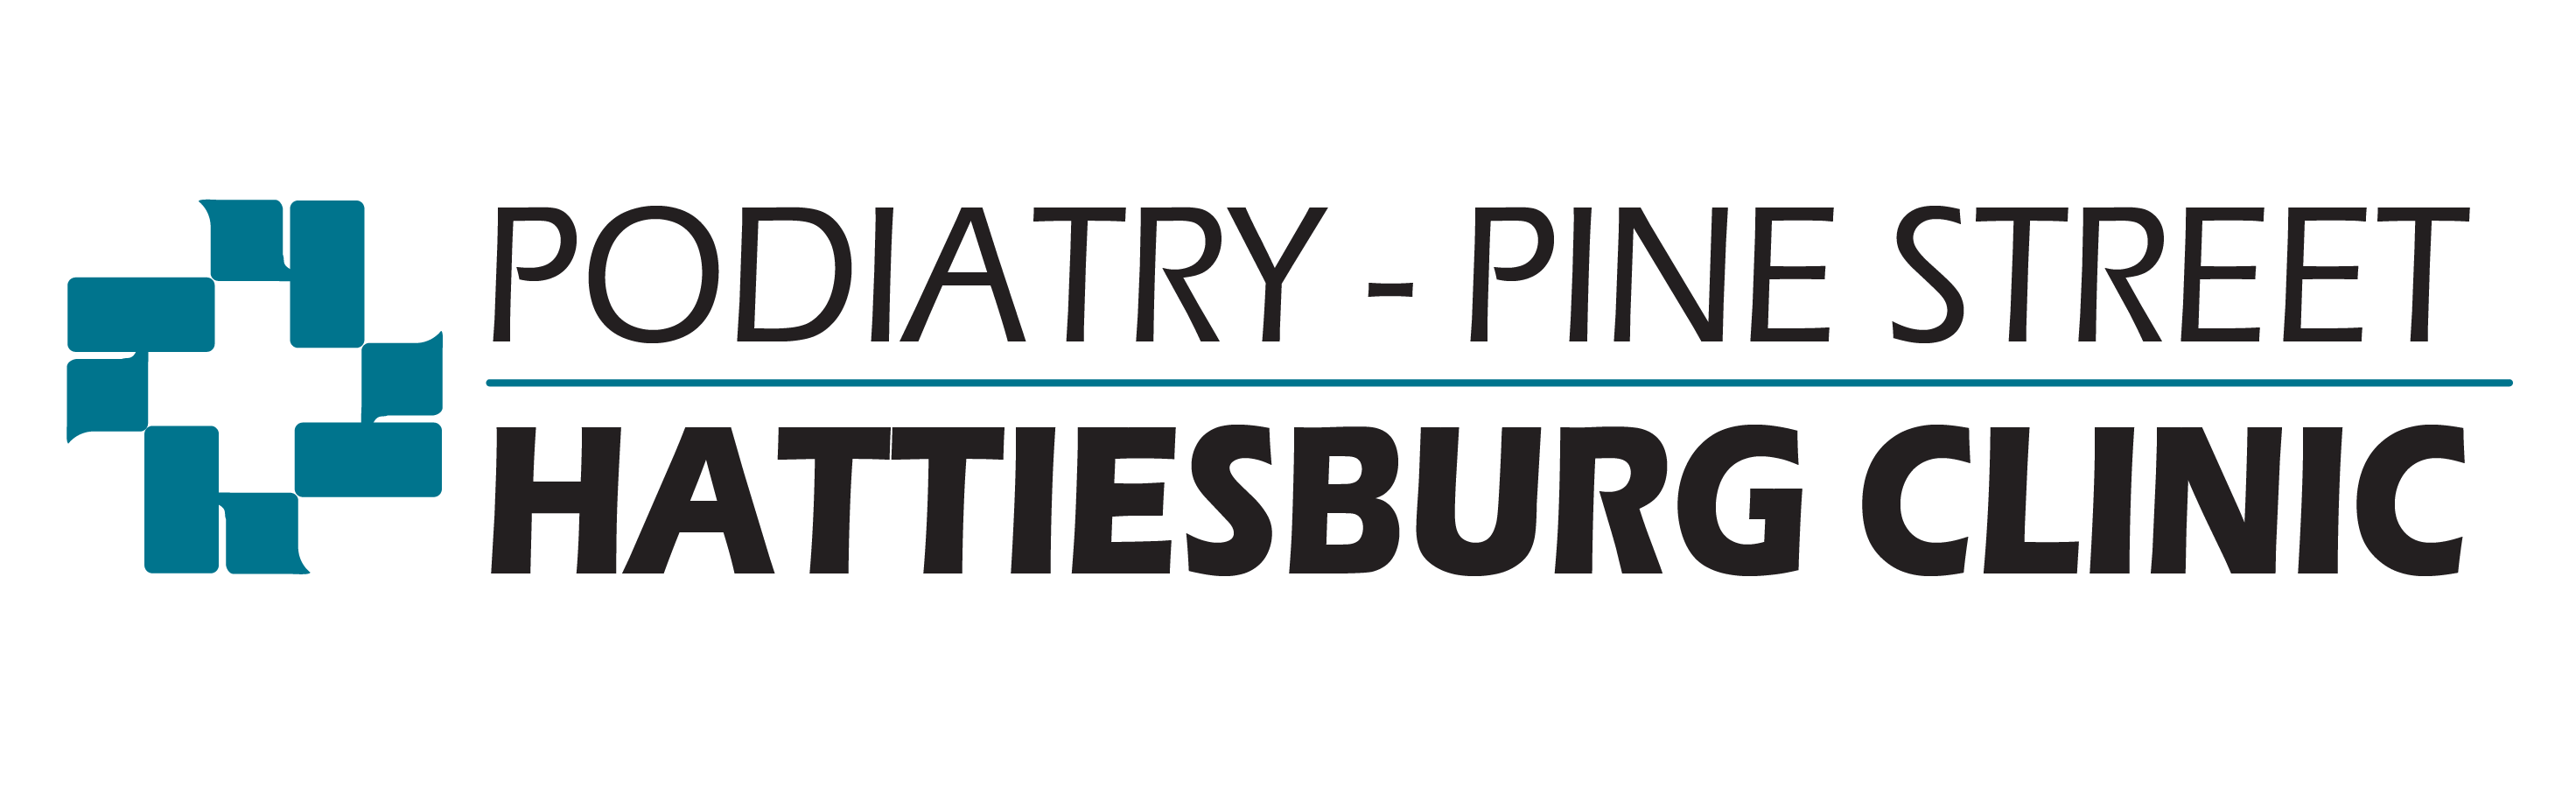 Podiatry - Pine Street logo